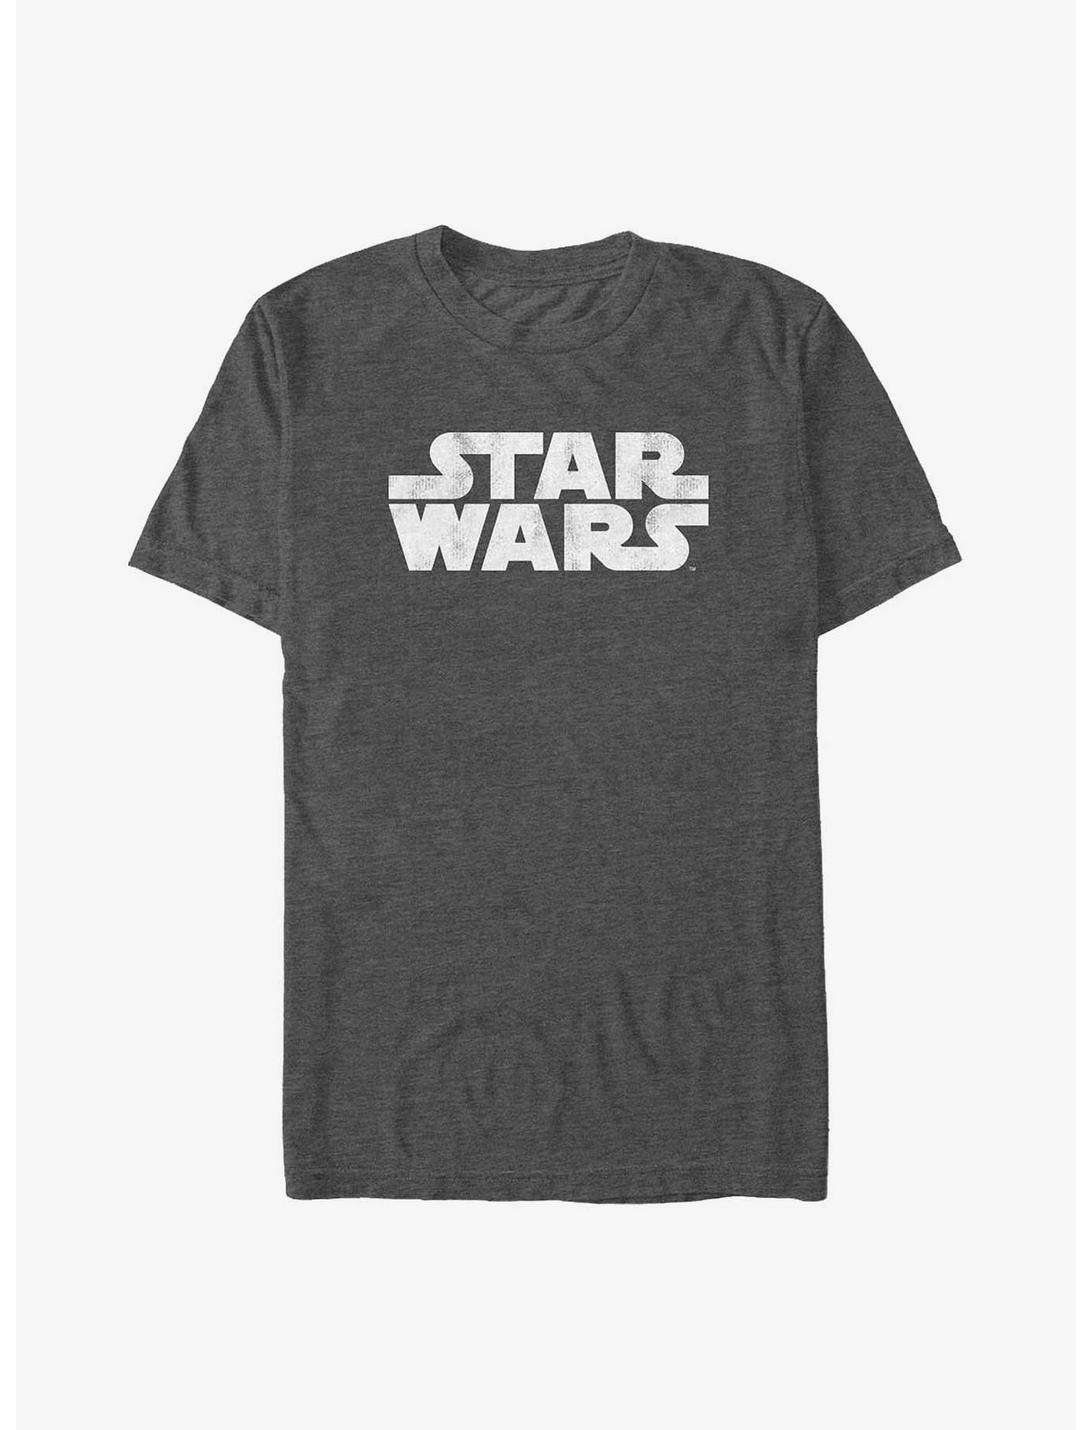 Star Wars Distressed Logo Big & Tall T-Shirt, CHAR HTR, hi-res